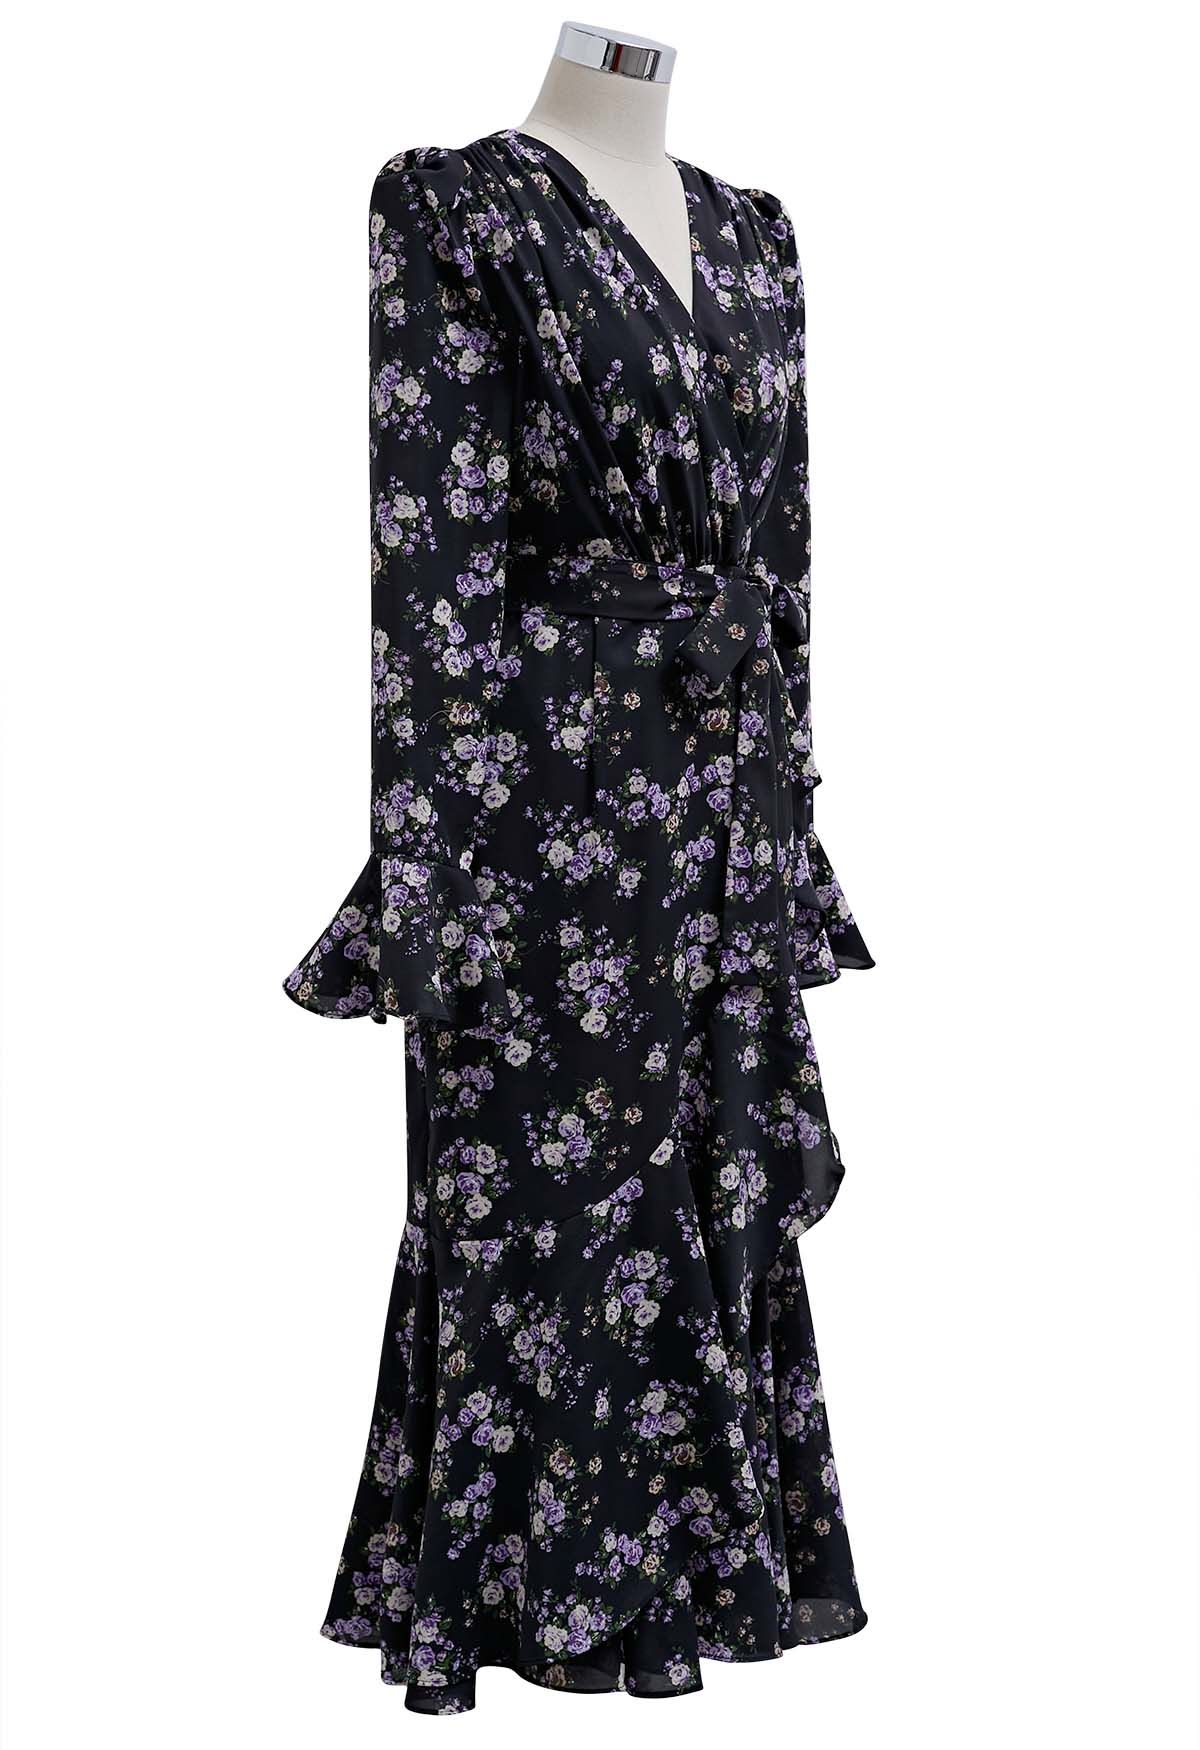 فستان ميدي رومانسي مزين بالزهور ومكشكش باللون الأسود